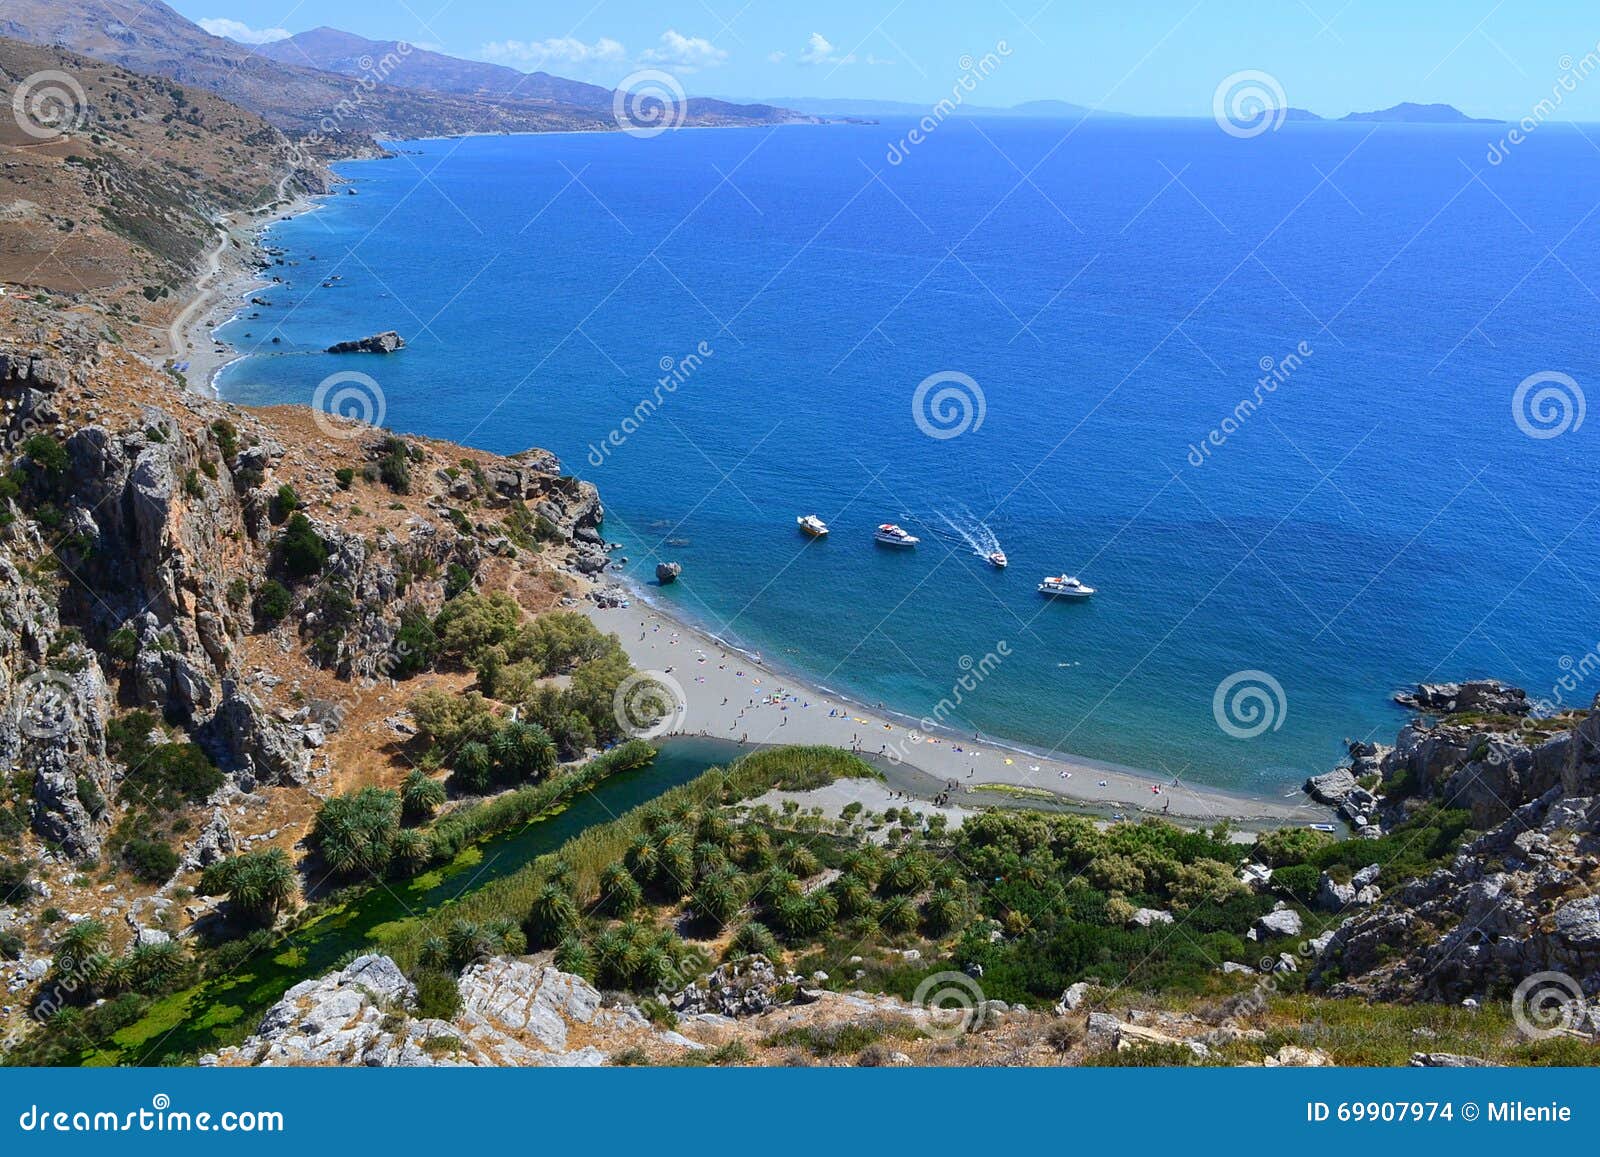 preveli beach, creta, greece